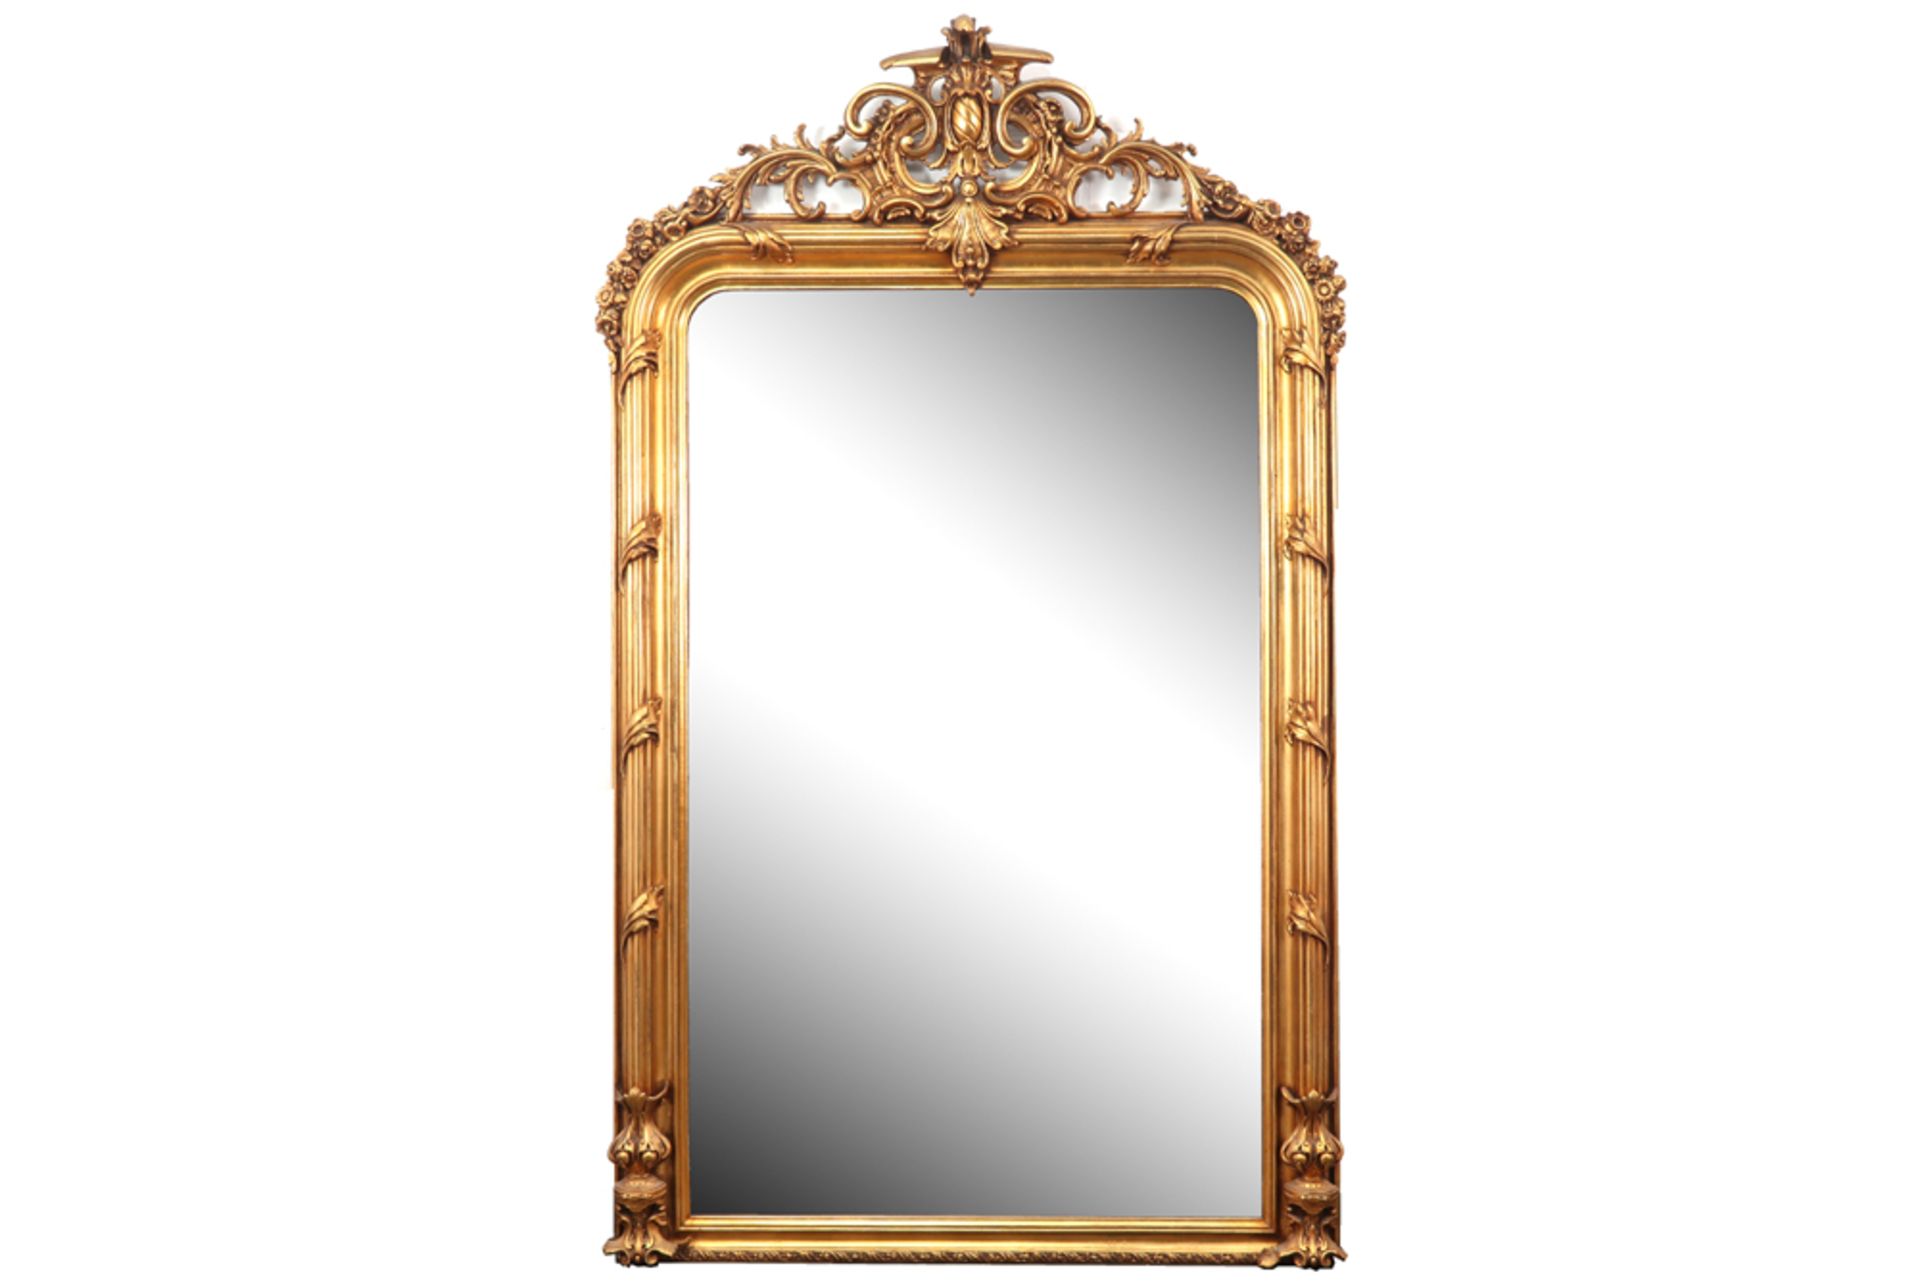 large mirror with an antique, gilded frame ||Vrij grote spiegel met een antieke, gedoreerde kader